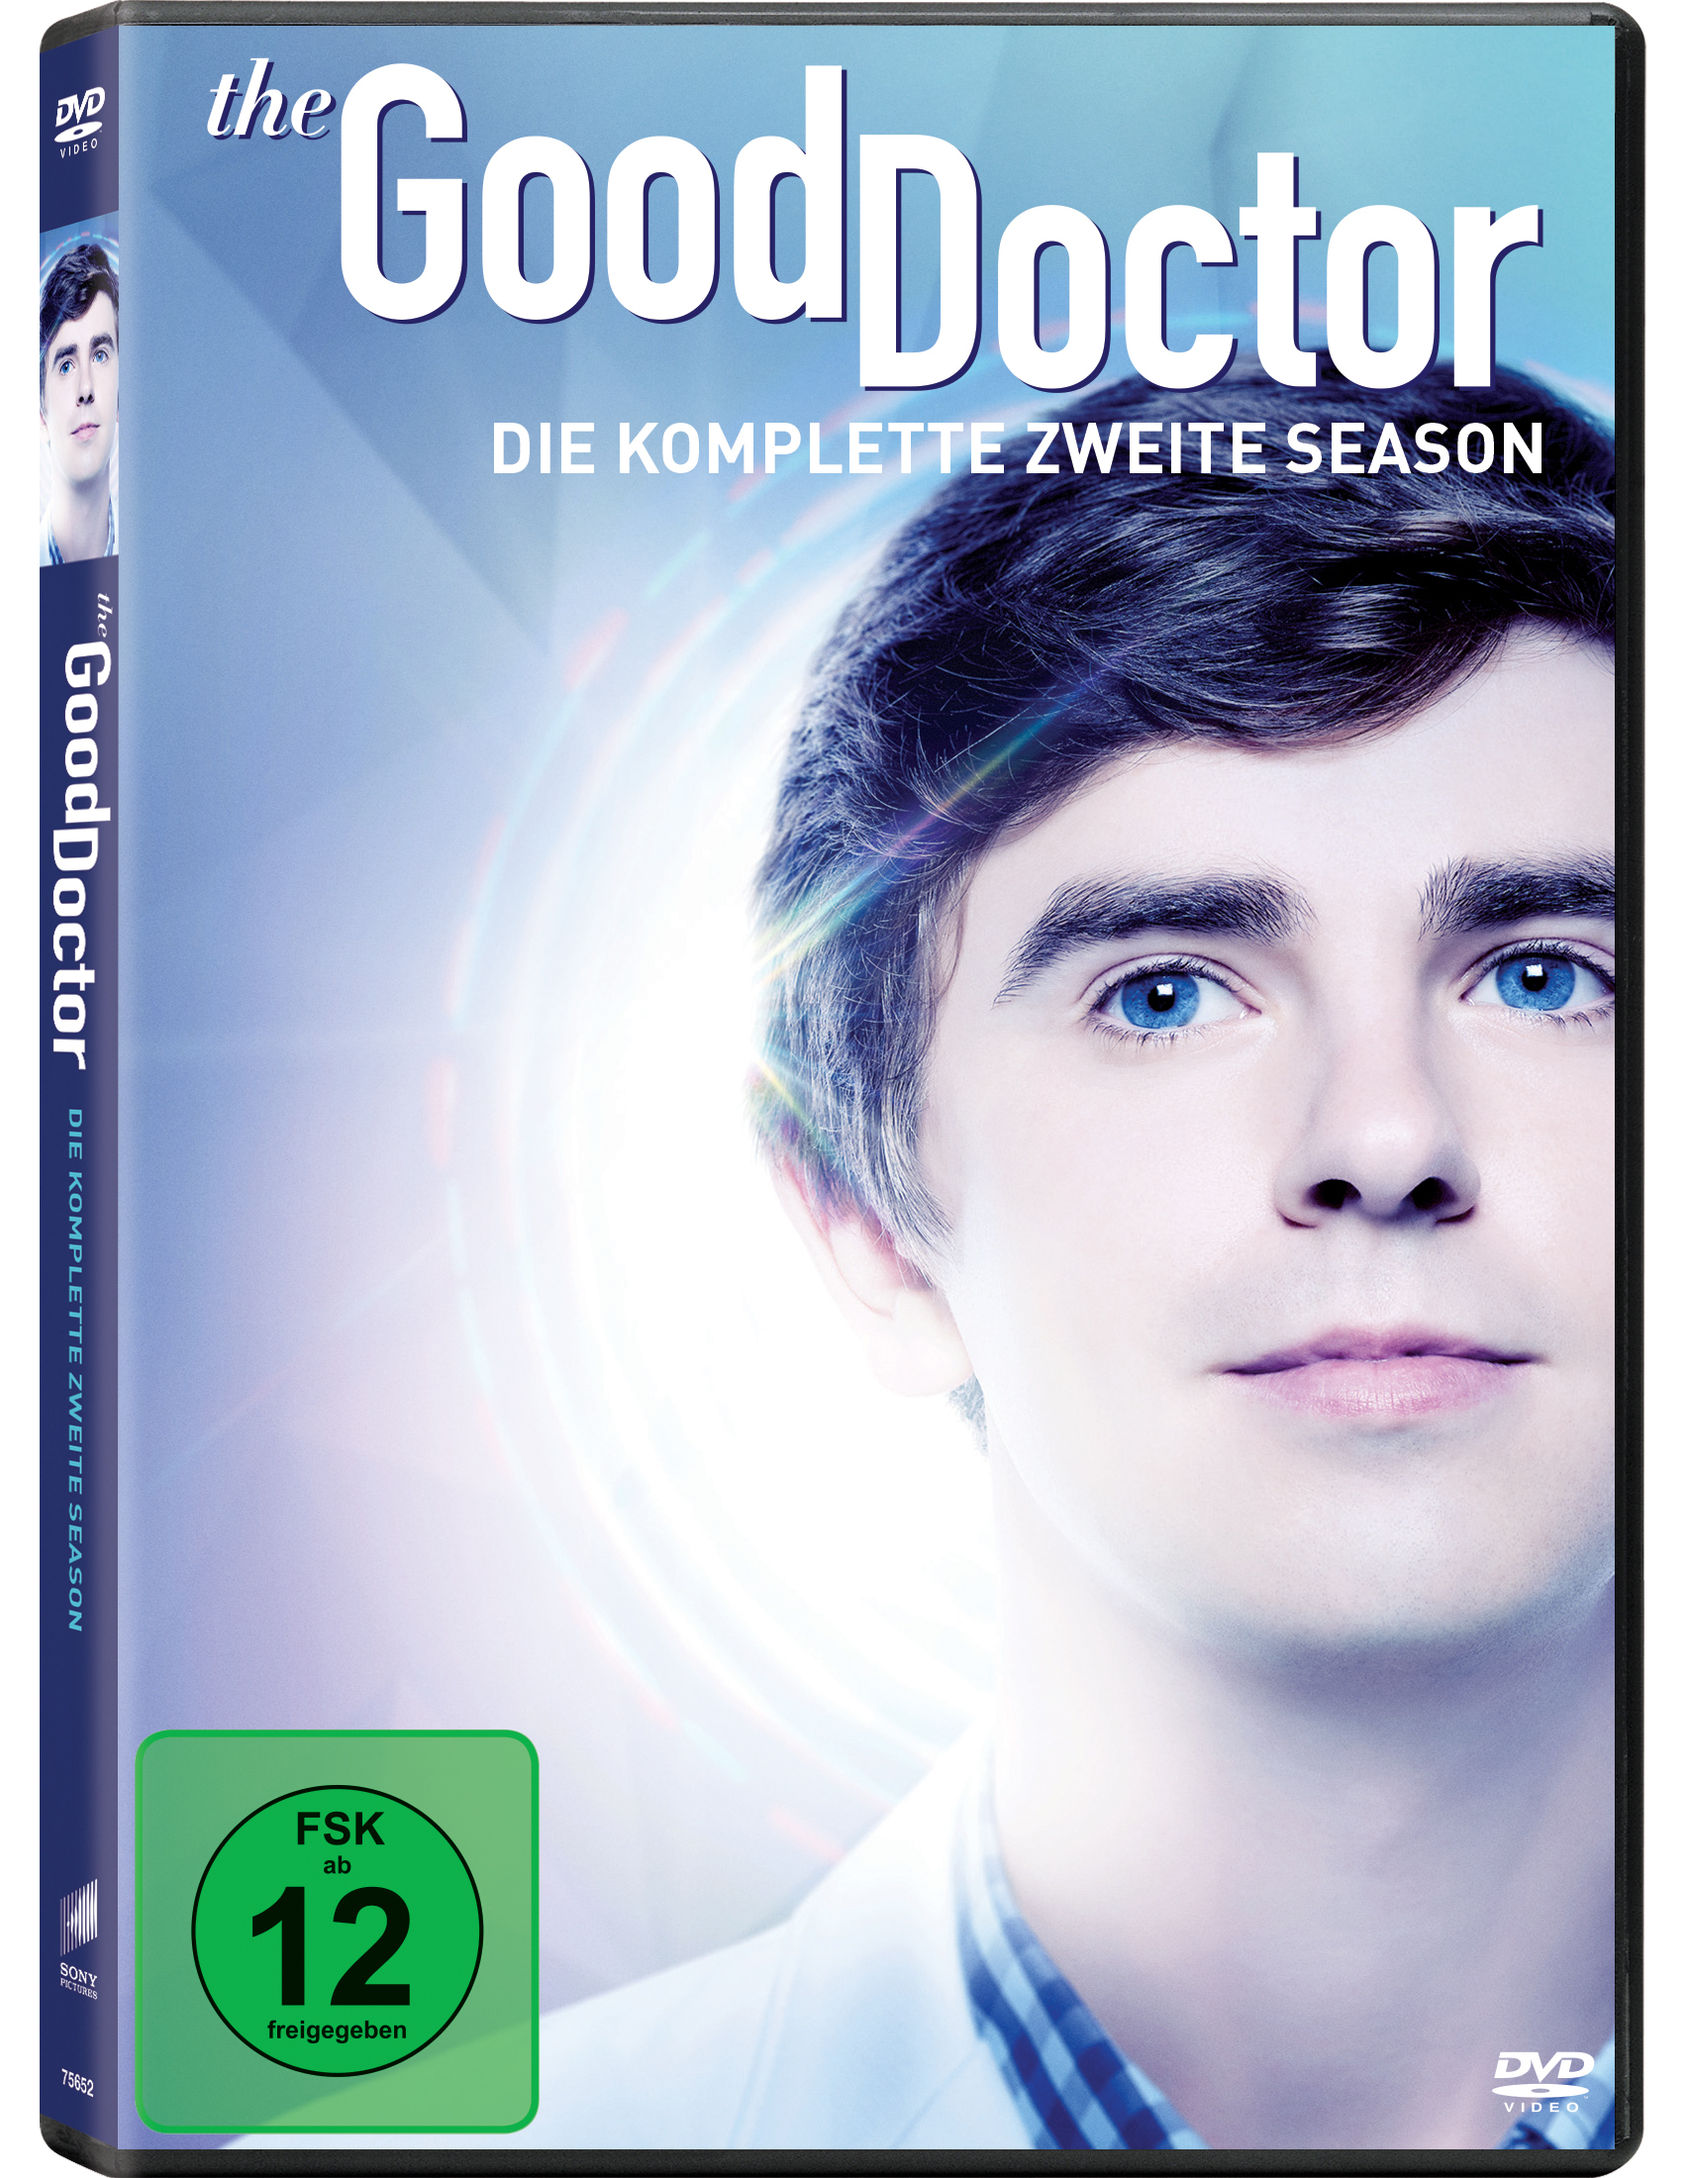 The Good Doctor - Staffel 2 DVD bei Weltbild.at bestellen